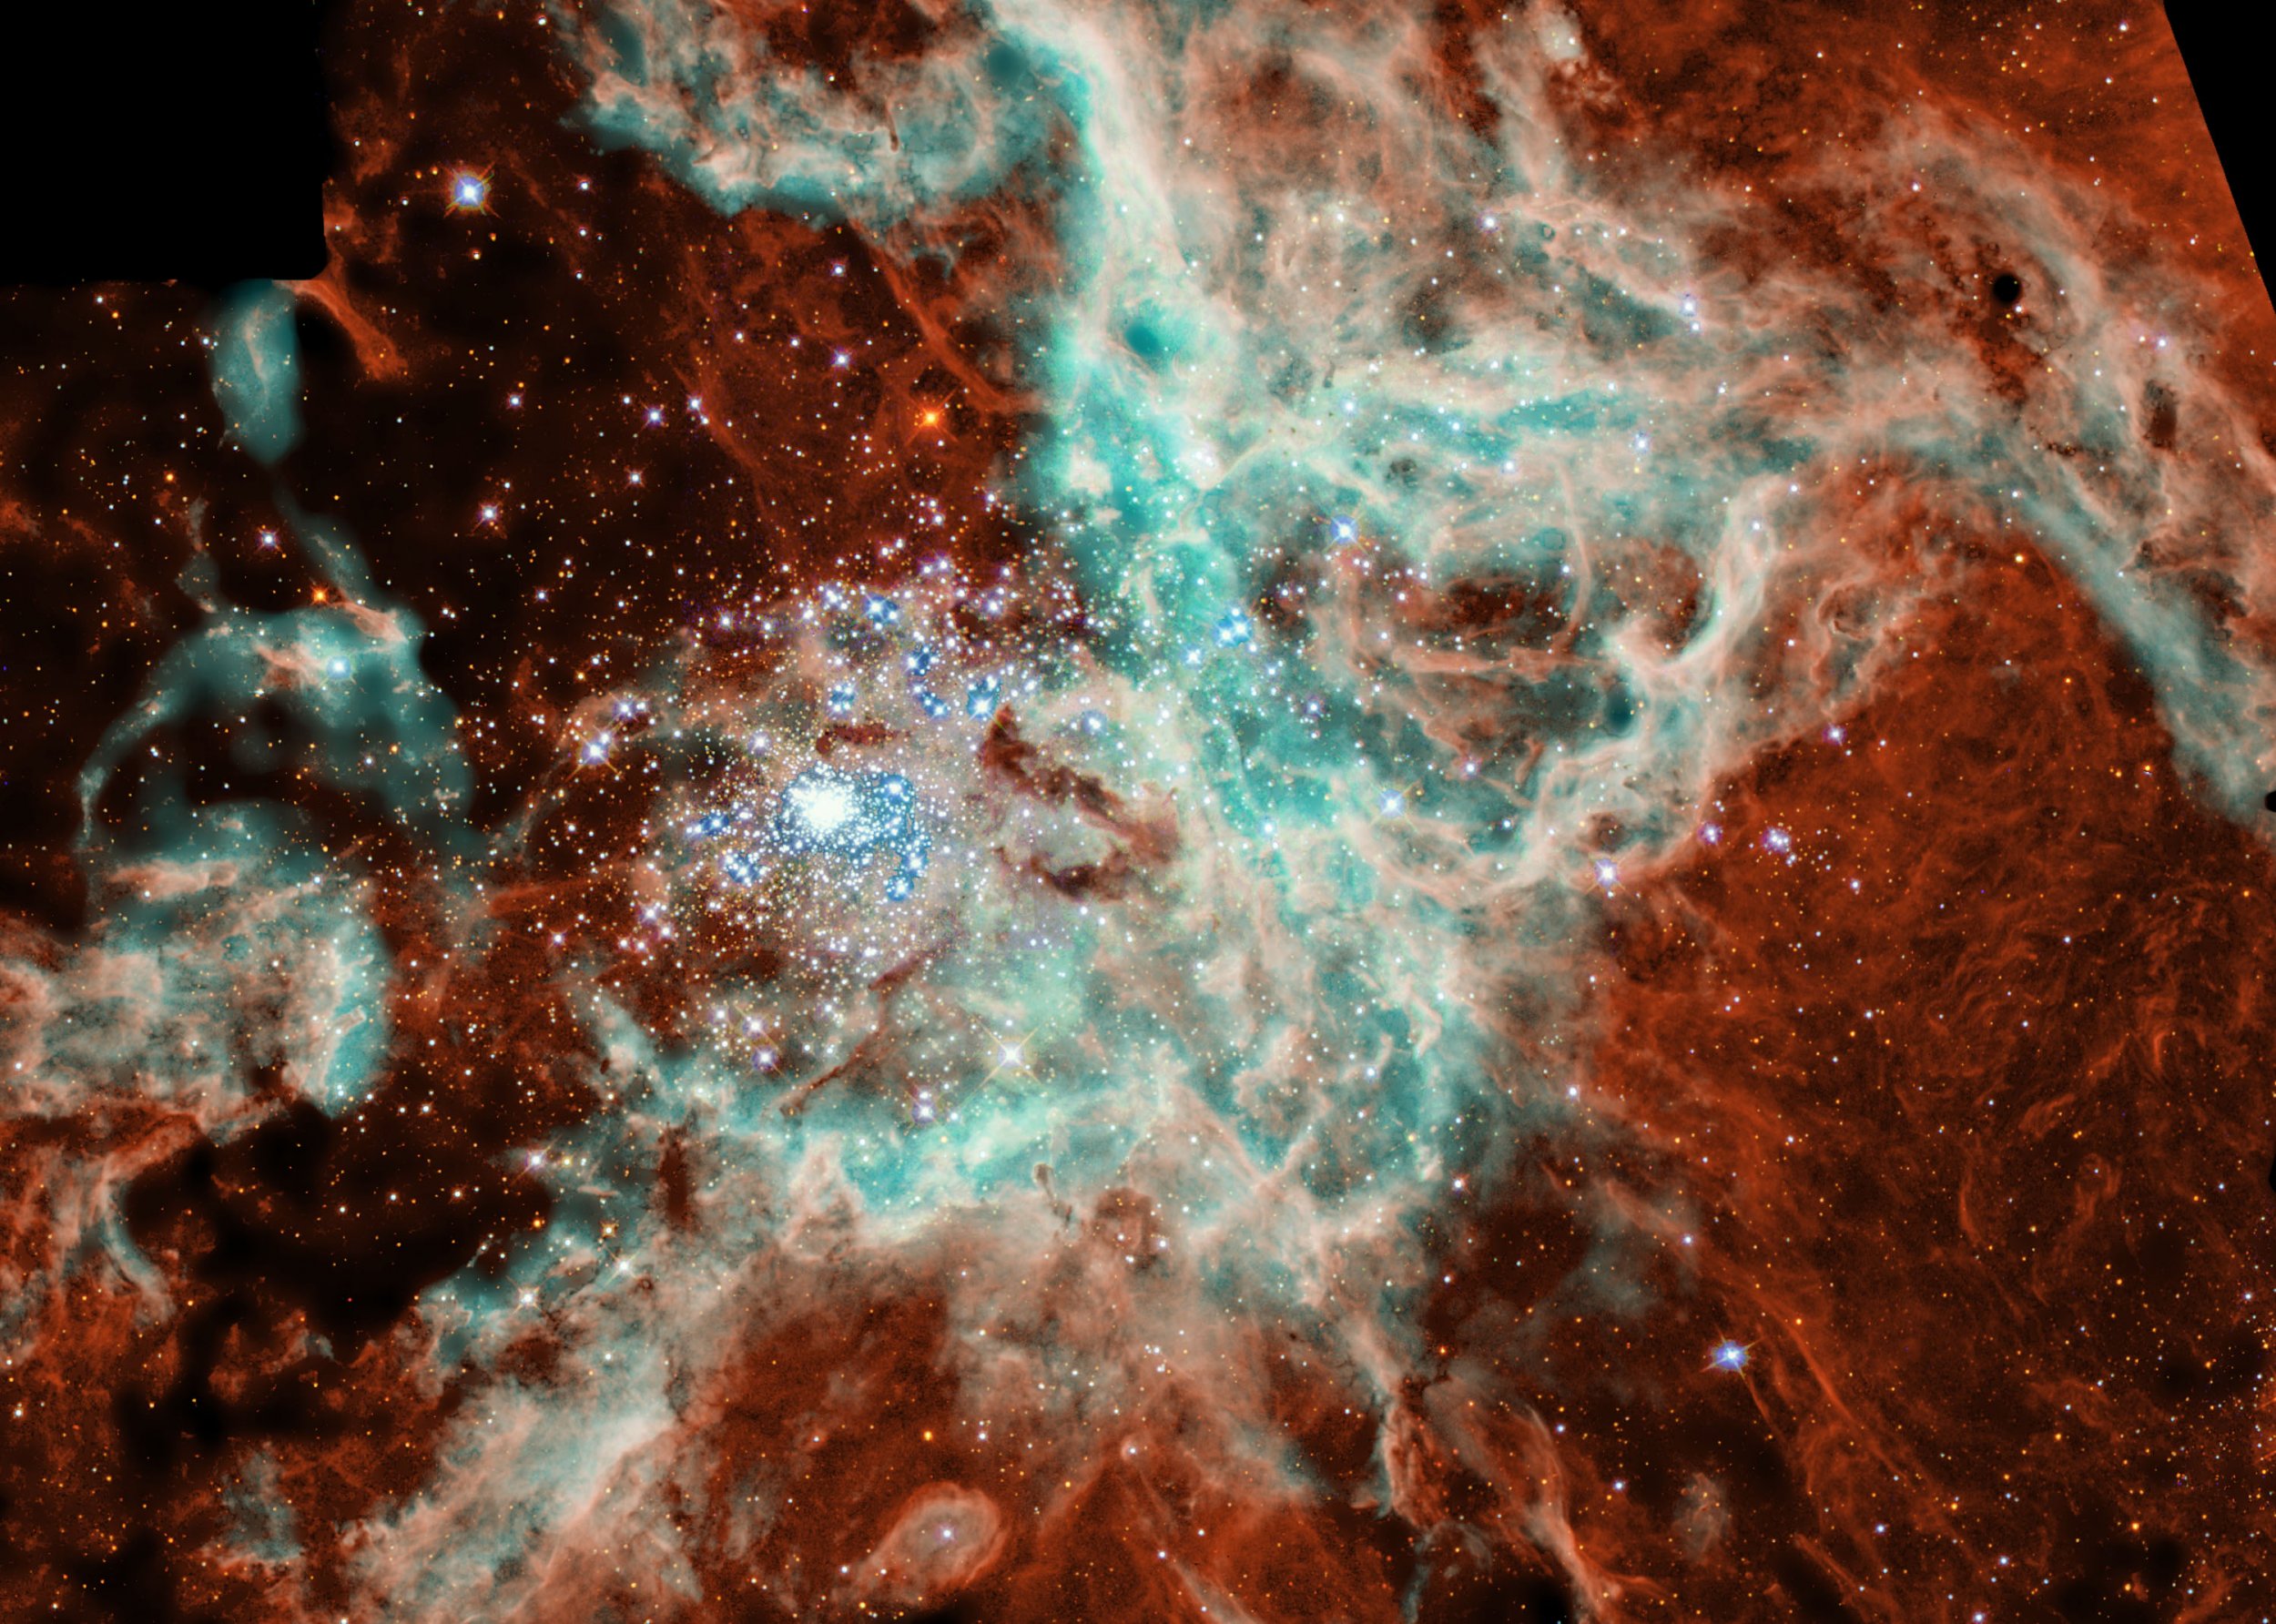 30 Doradus Nebula